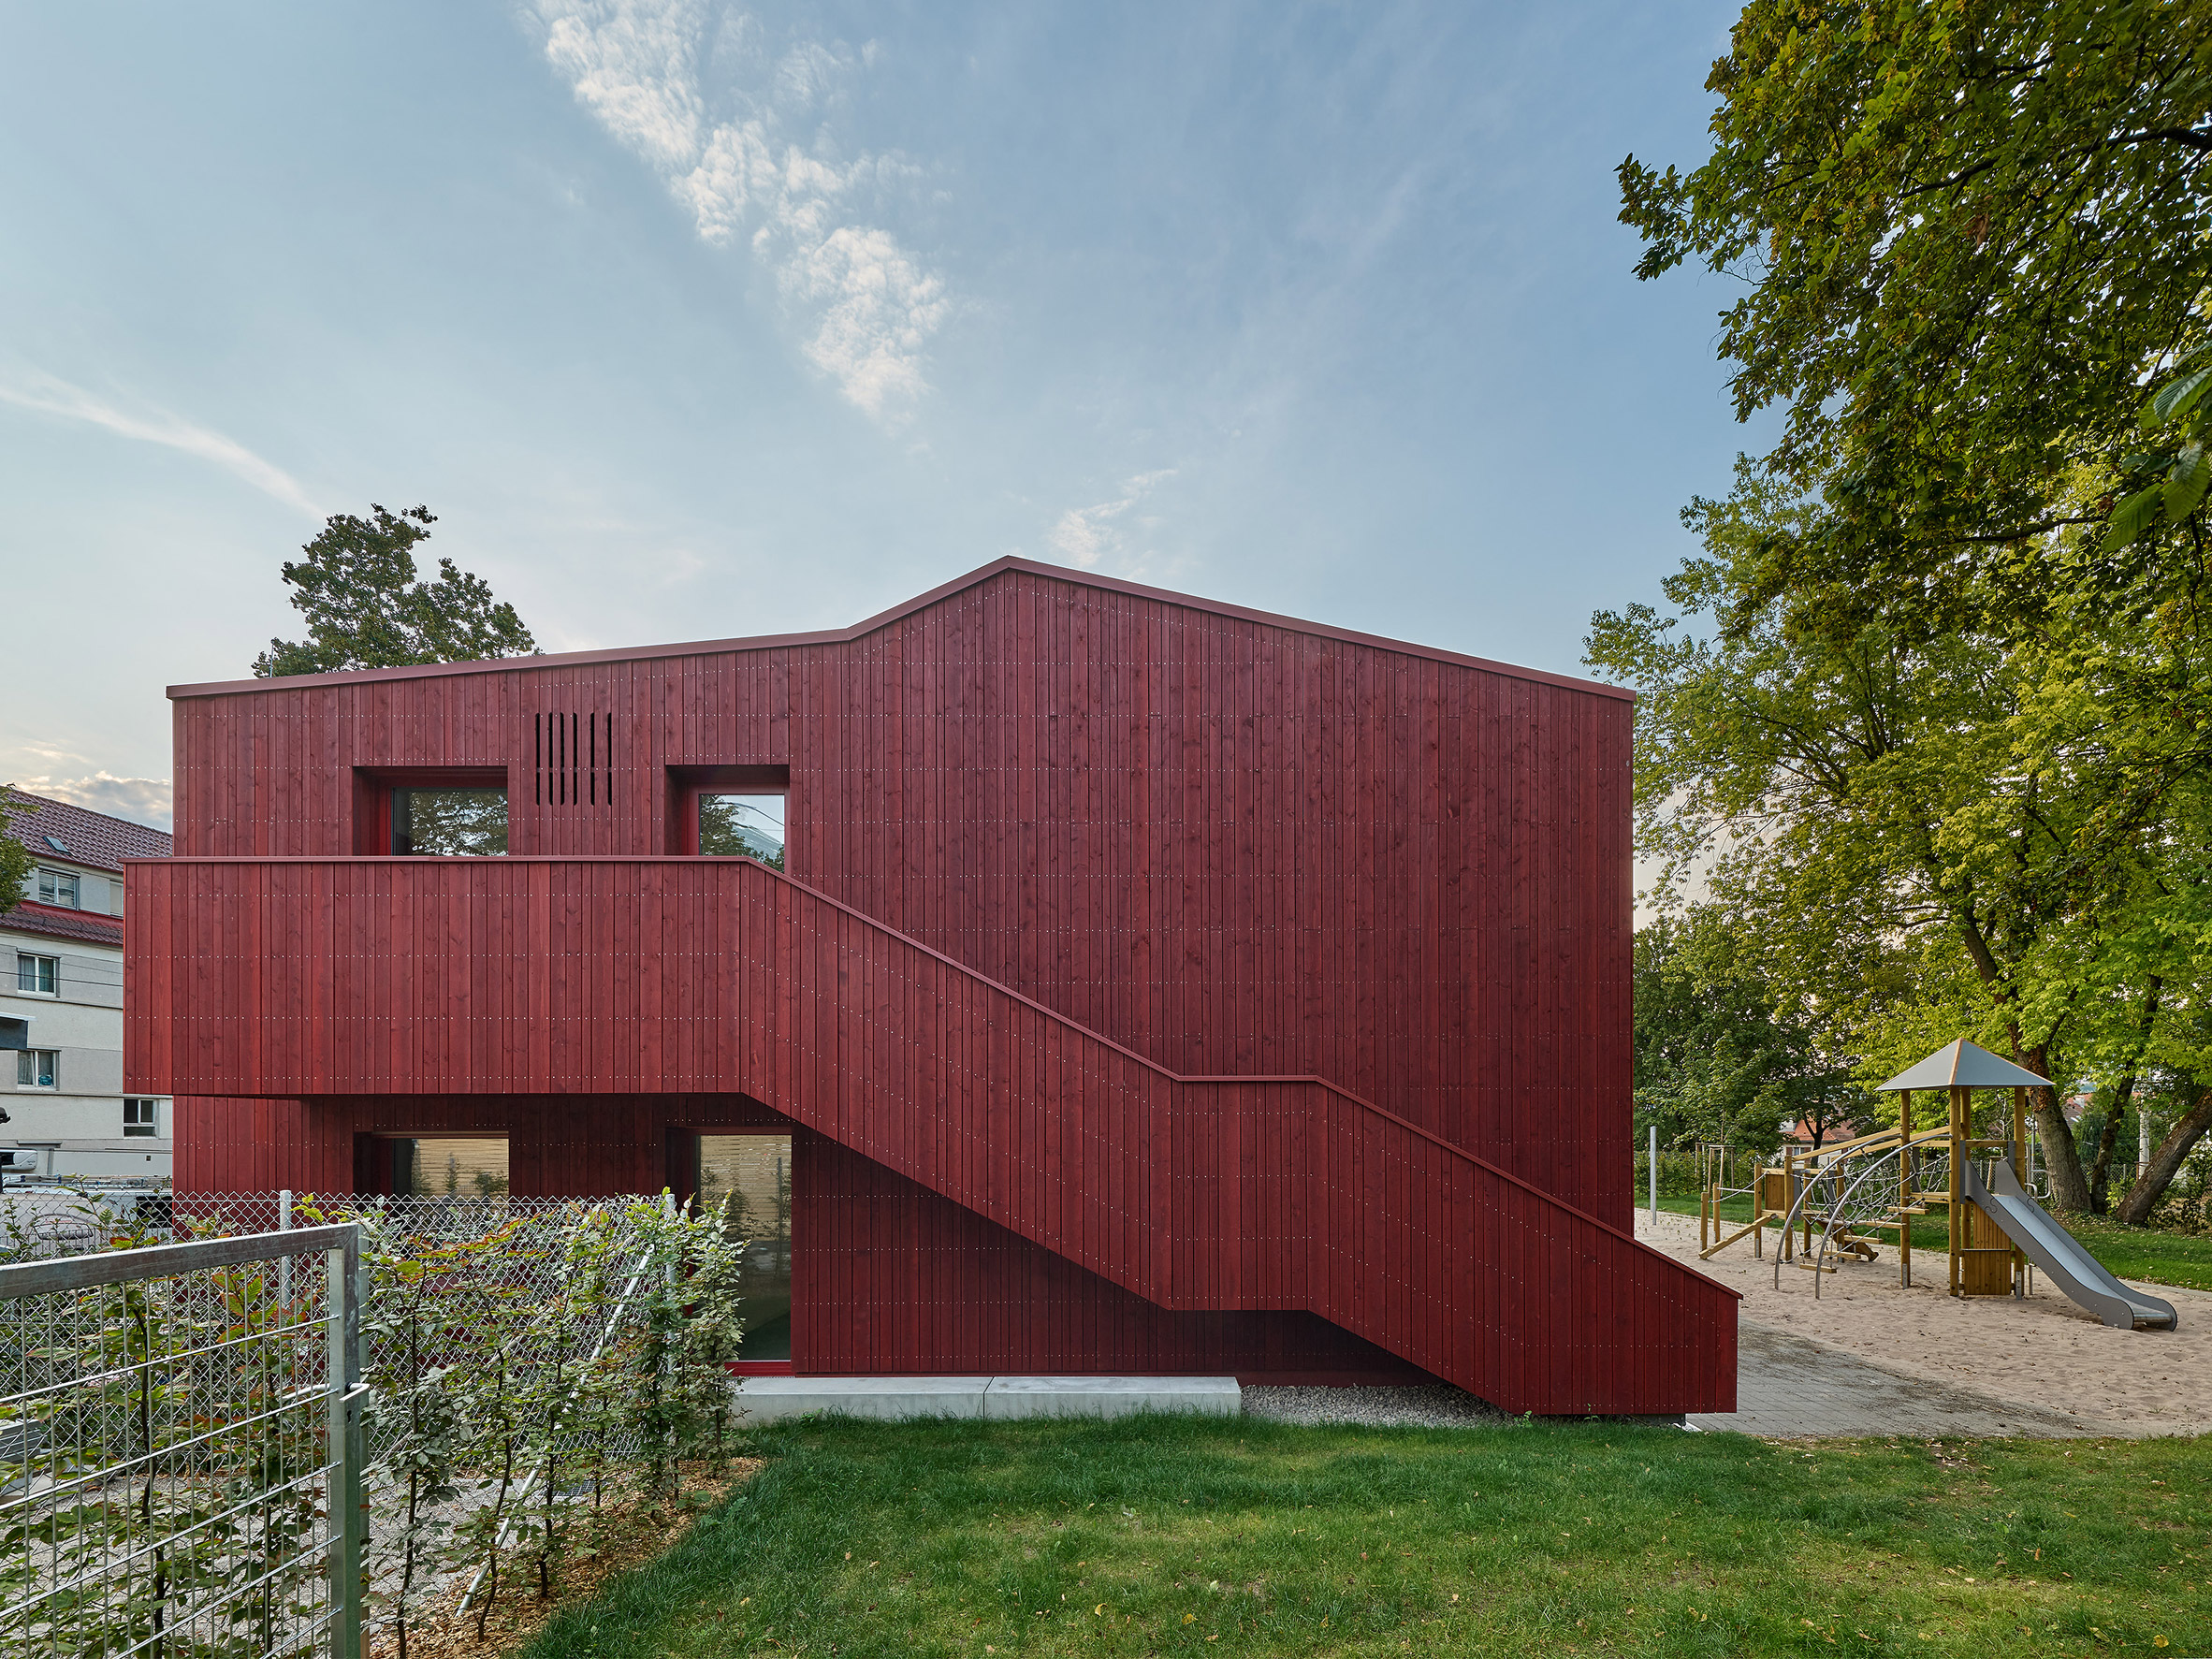 Parking Garage / Birk Heilmeyer und Frenzel Architekten